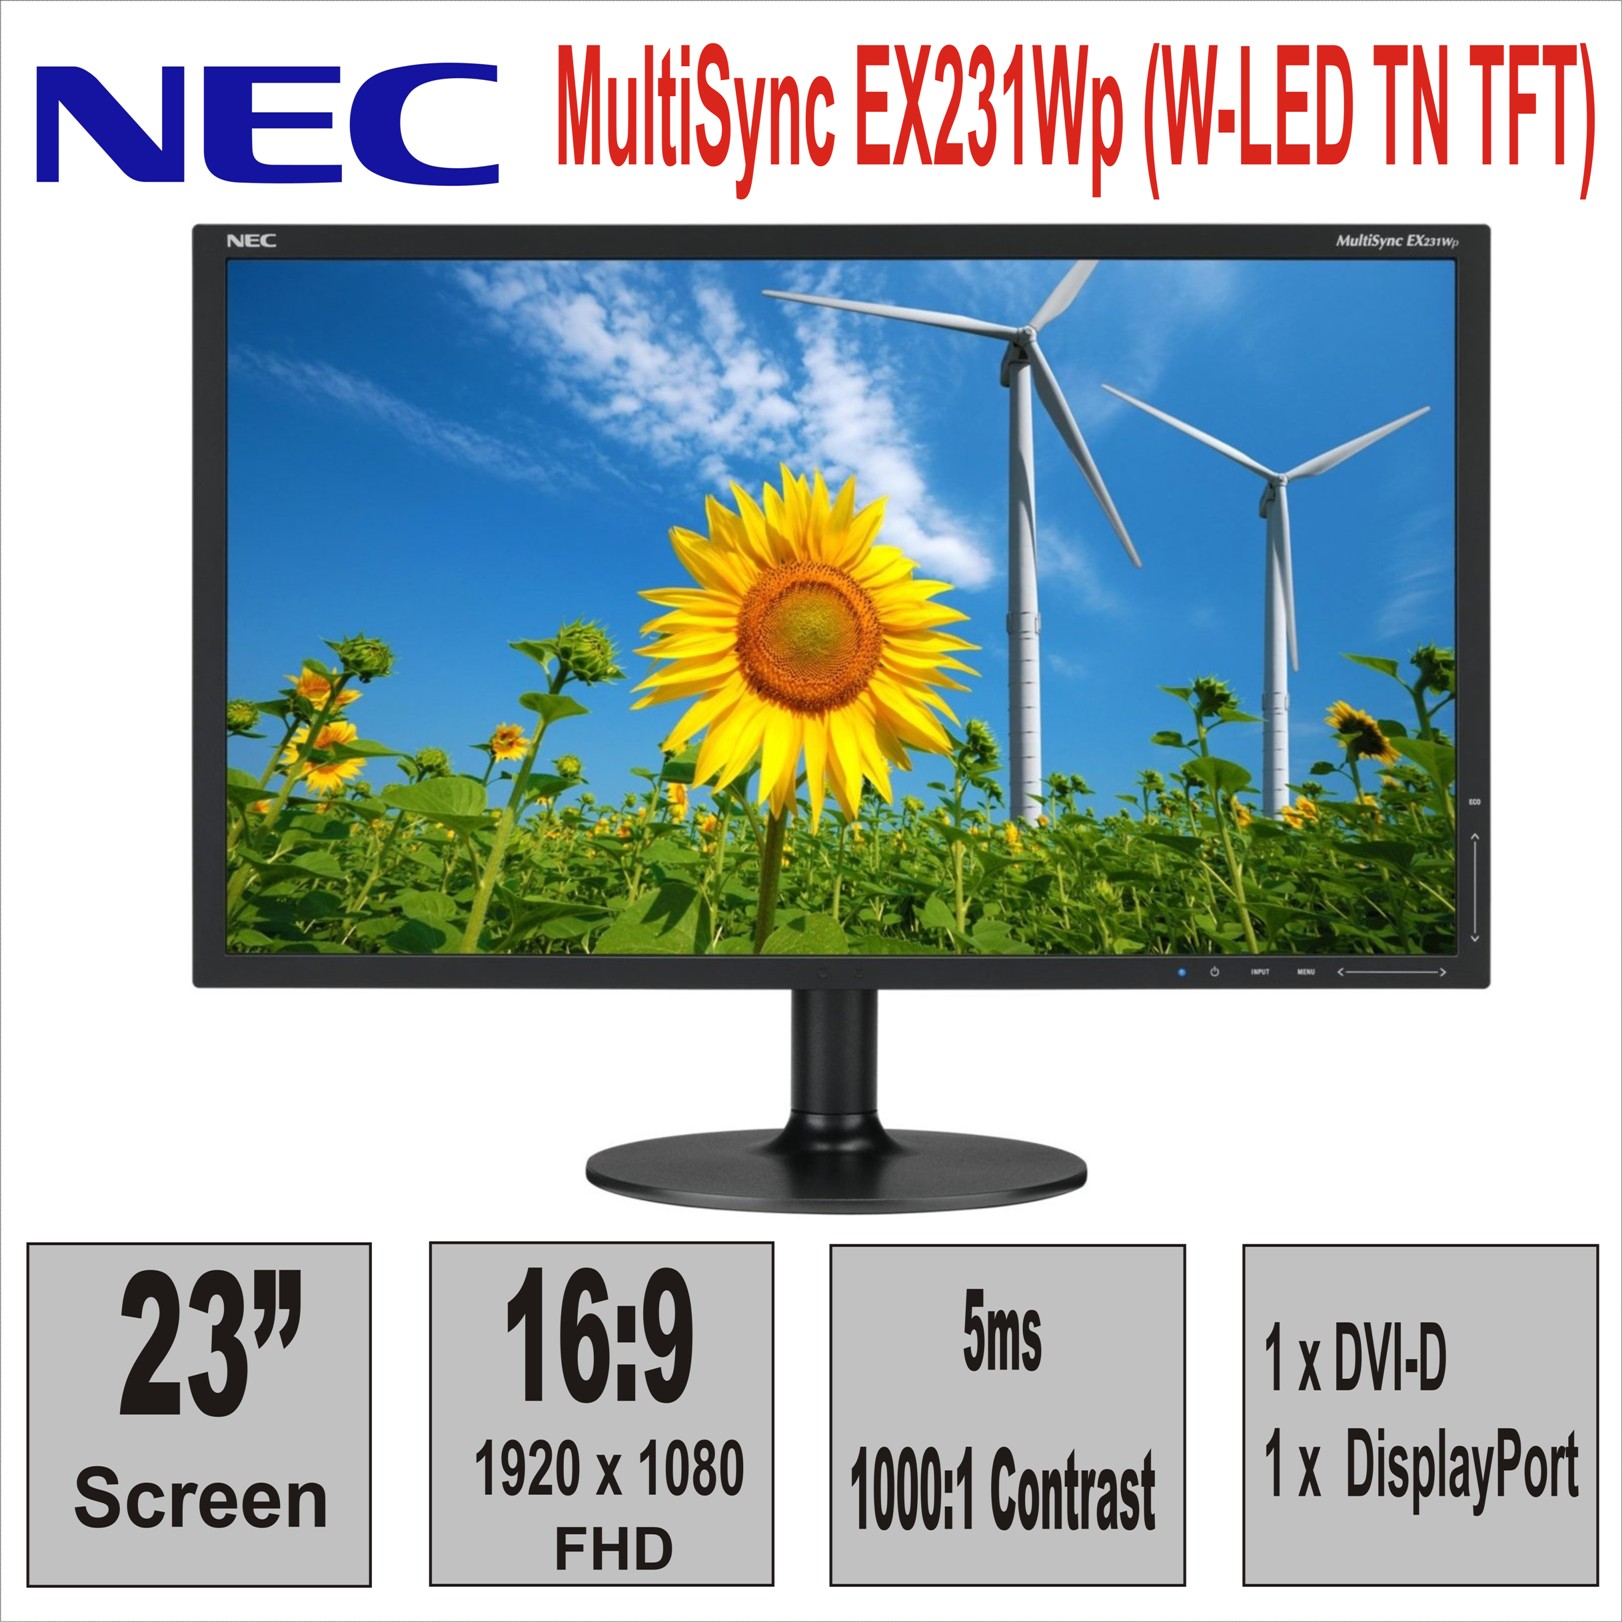 Монитор 23“ NEC MultiSync EX231Wp (W-LED TN TFT)